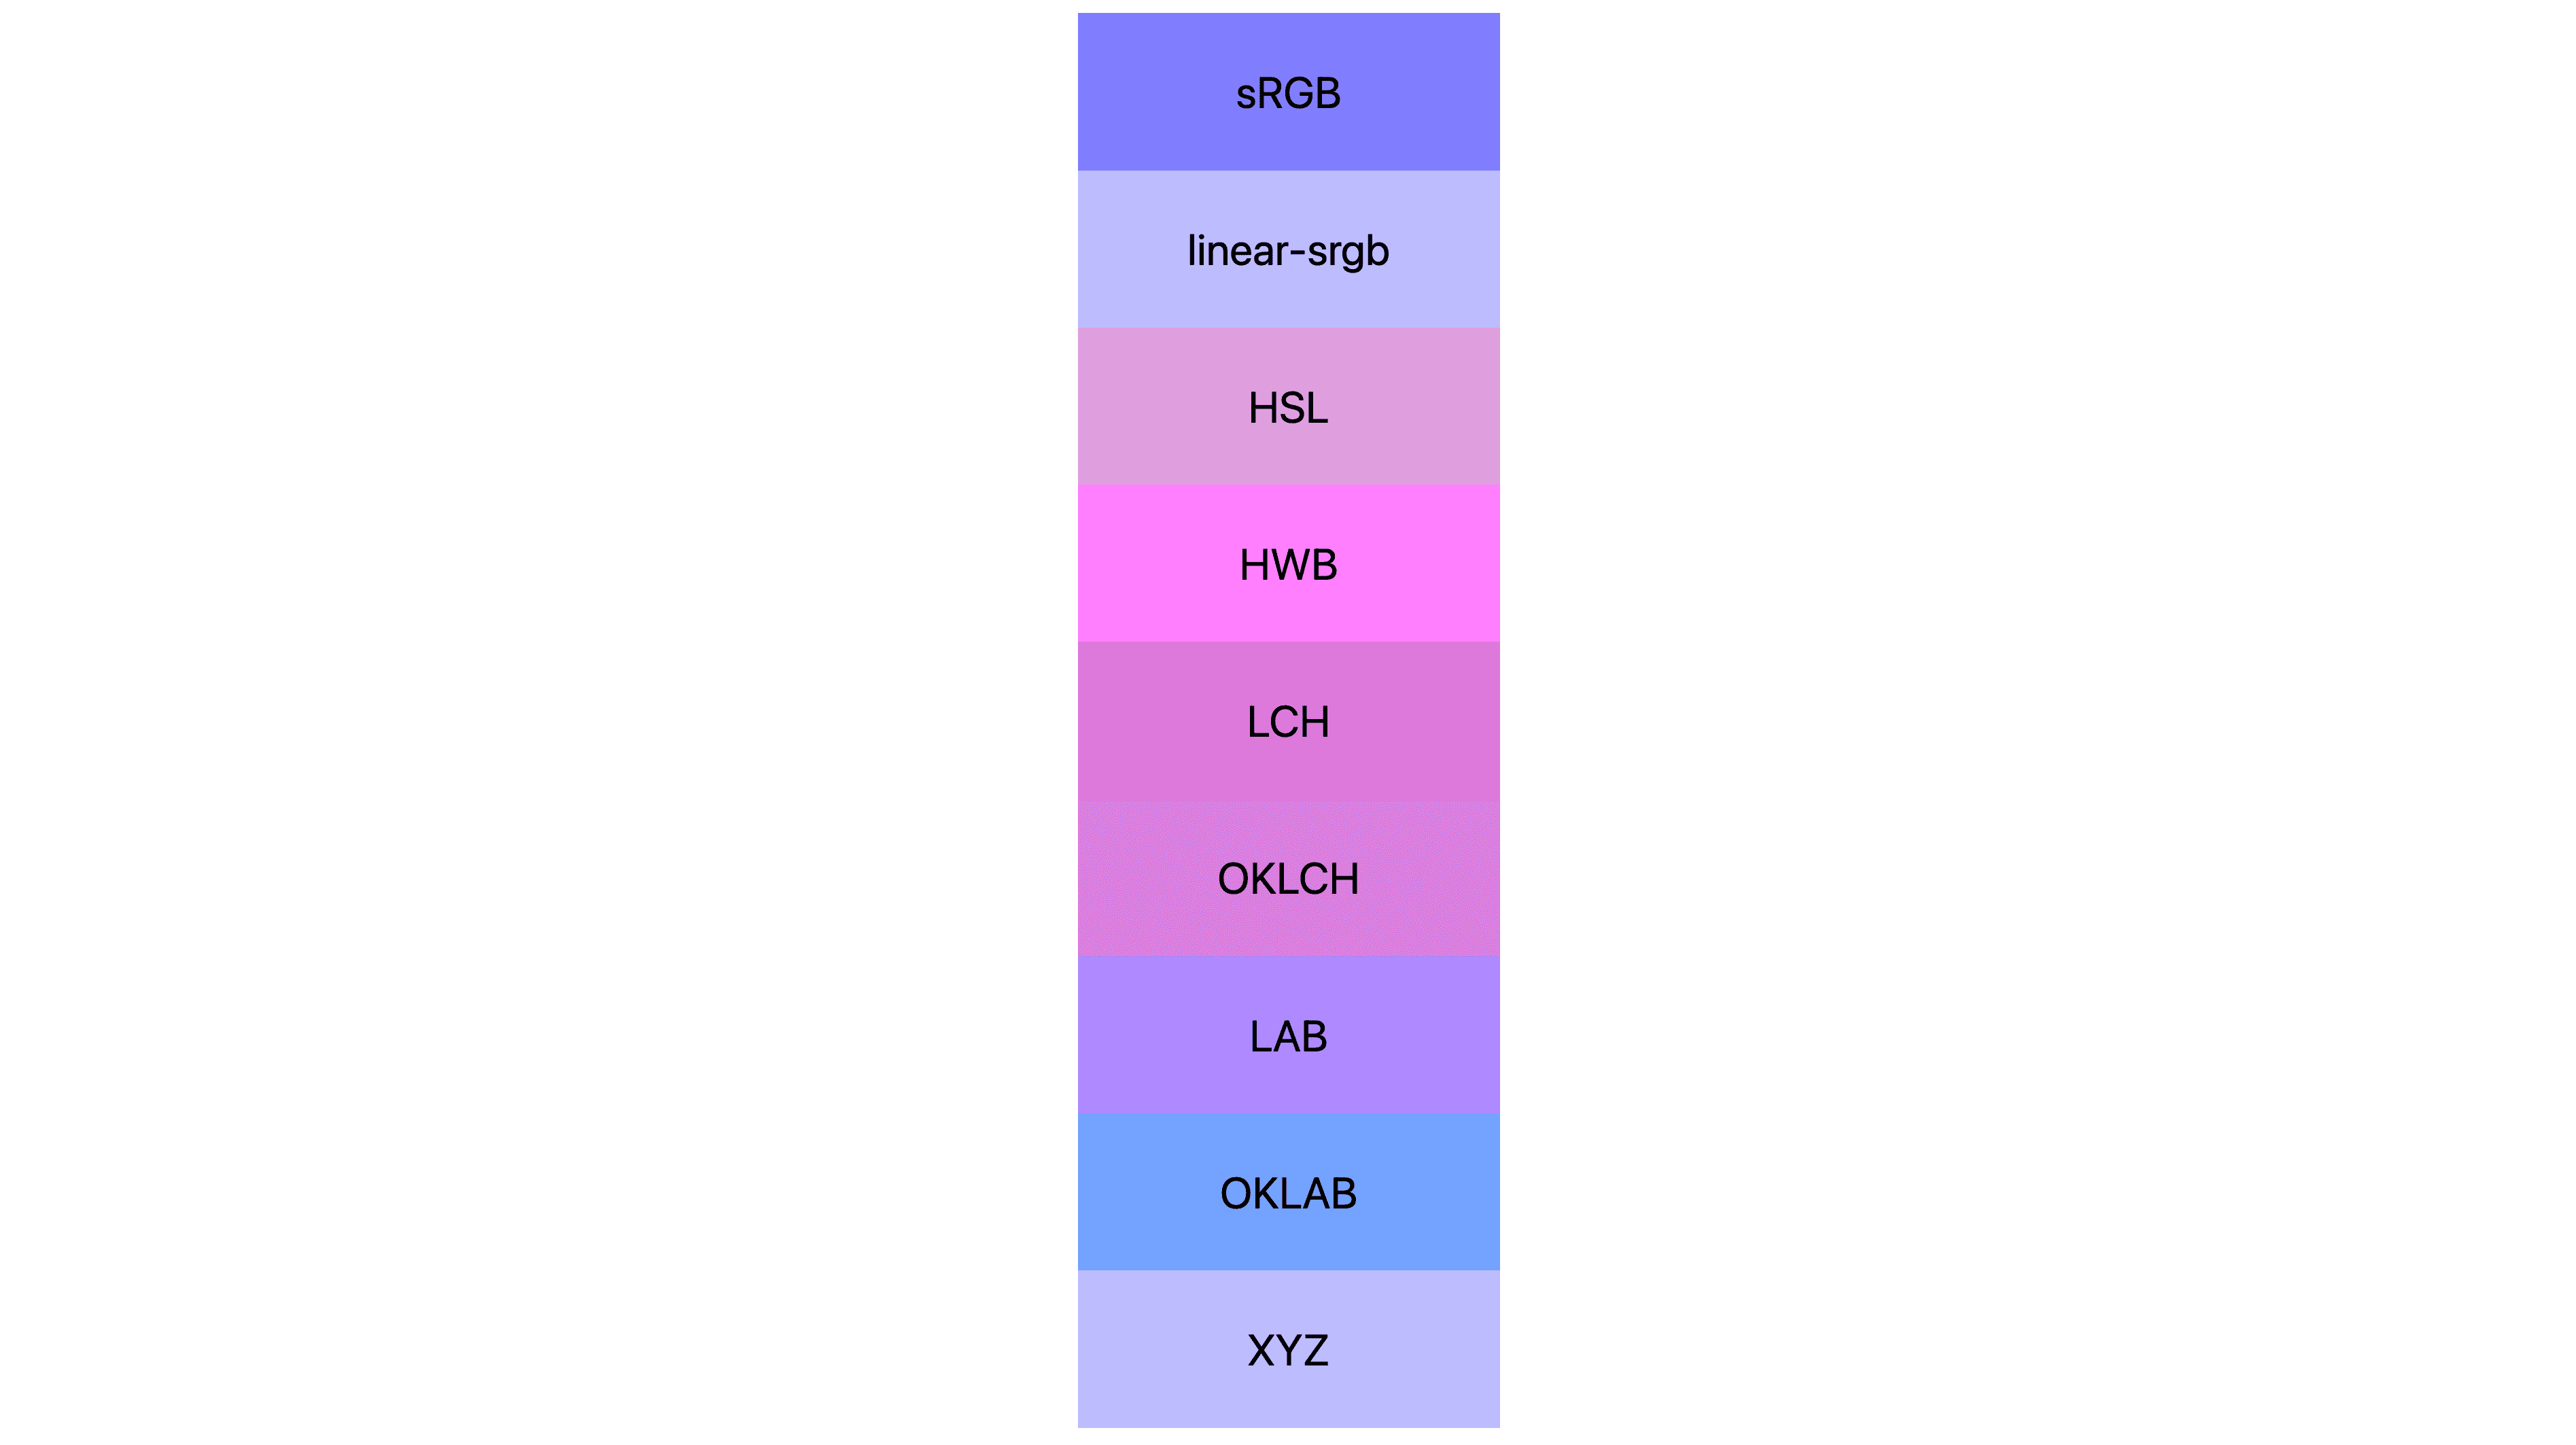 7 個色域 (srgb、Linear-srgb、lch、oklch、lab、oklab、xyz) 各會顯示不同的結果。多數客房為粉紅色或紫色，但實際上少數仍是藍色。